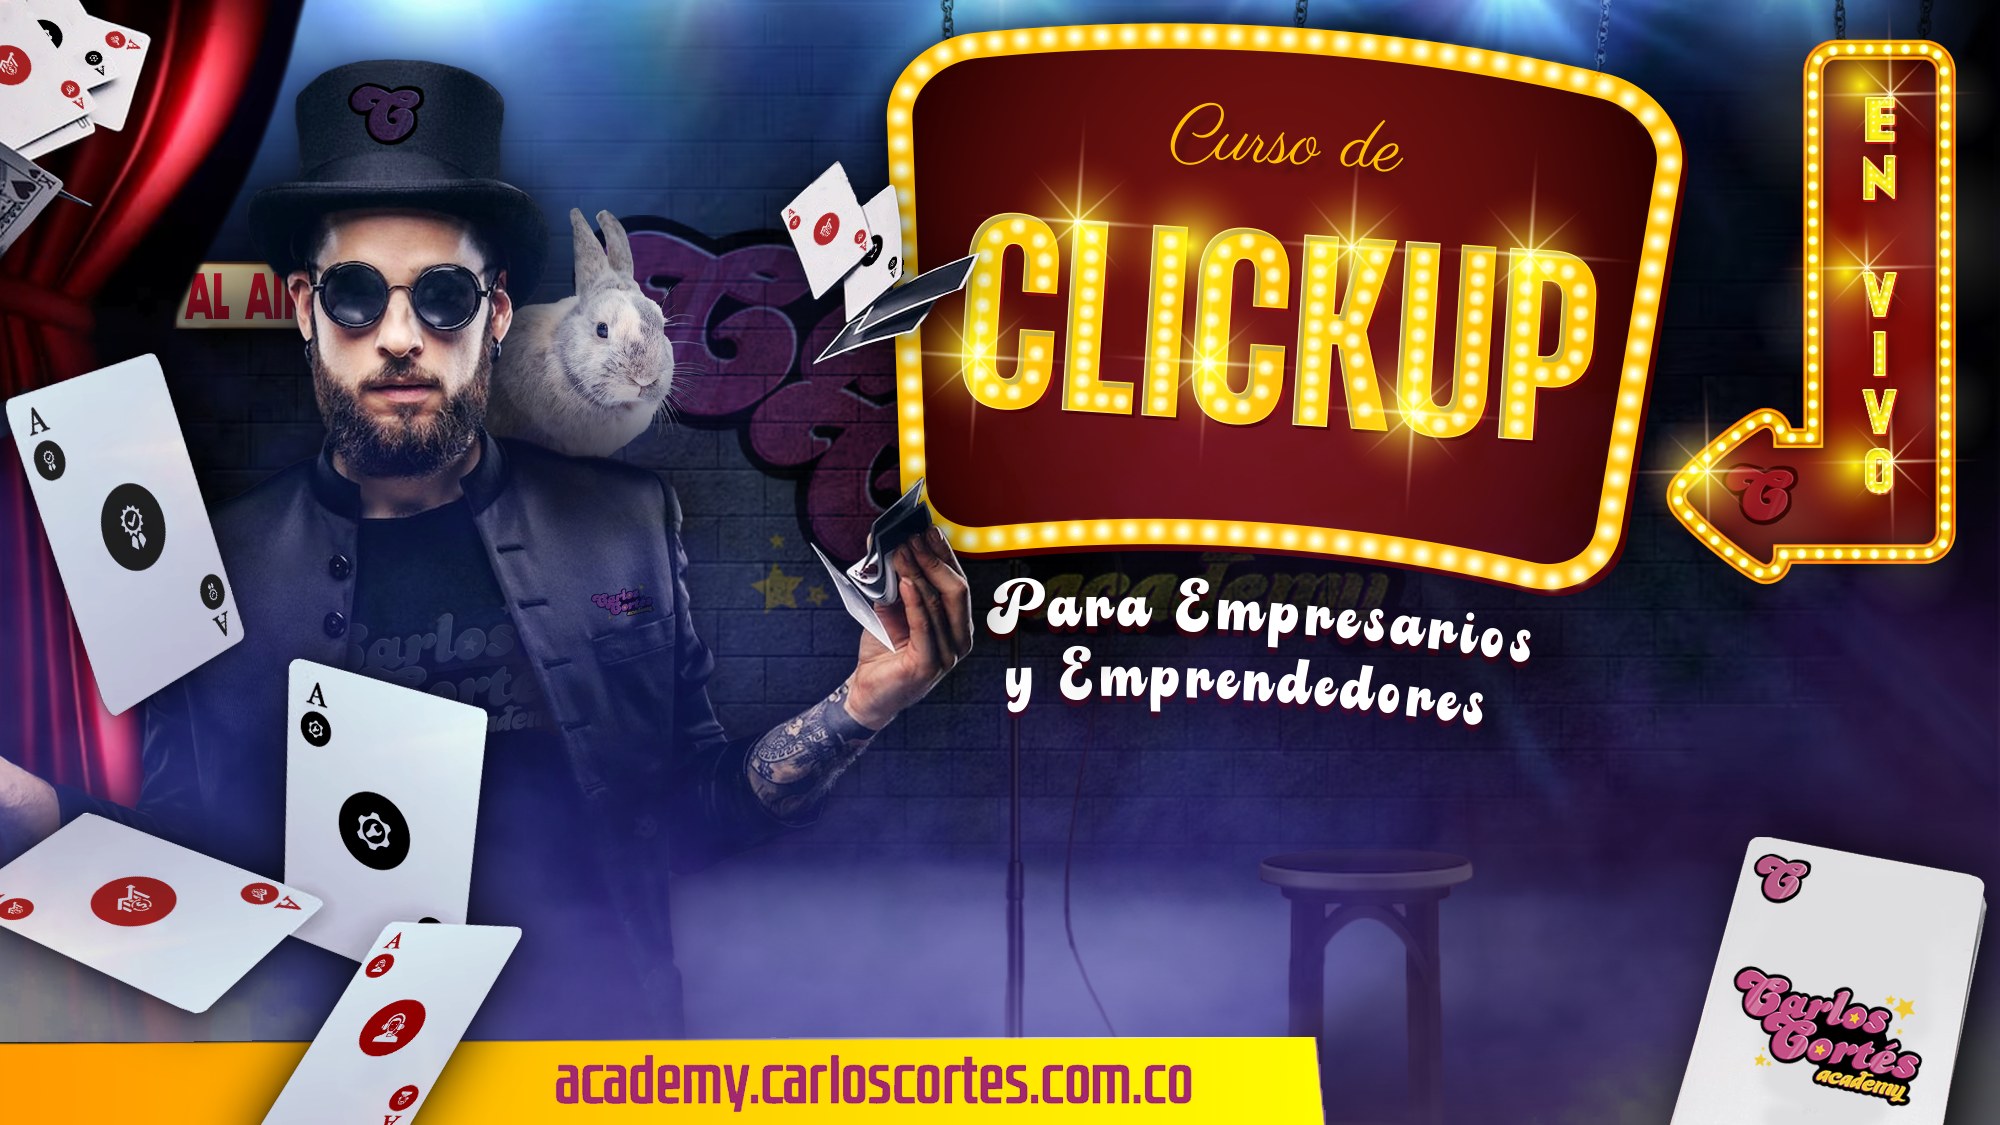 Curso Gratis de ClickUp de Carlos Cortés Academy